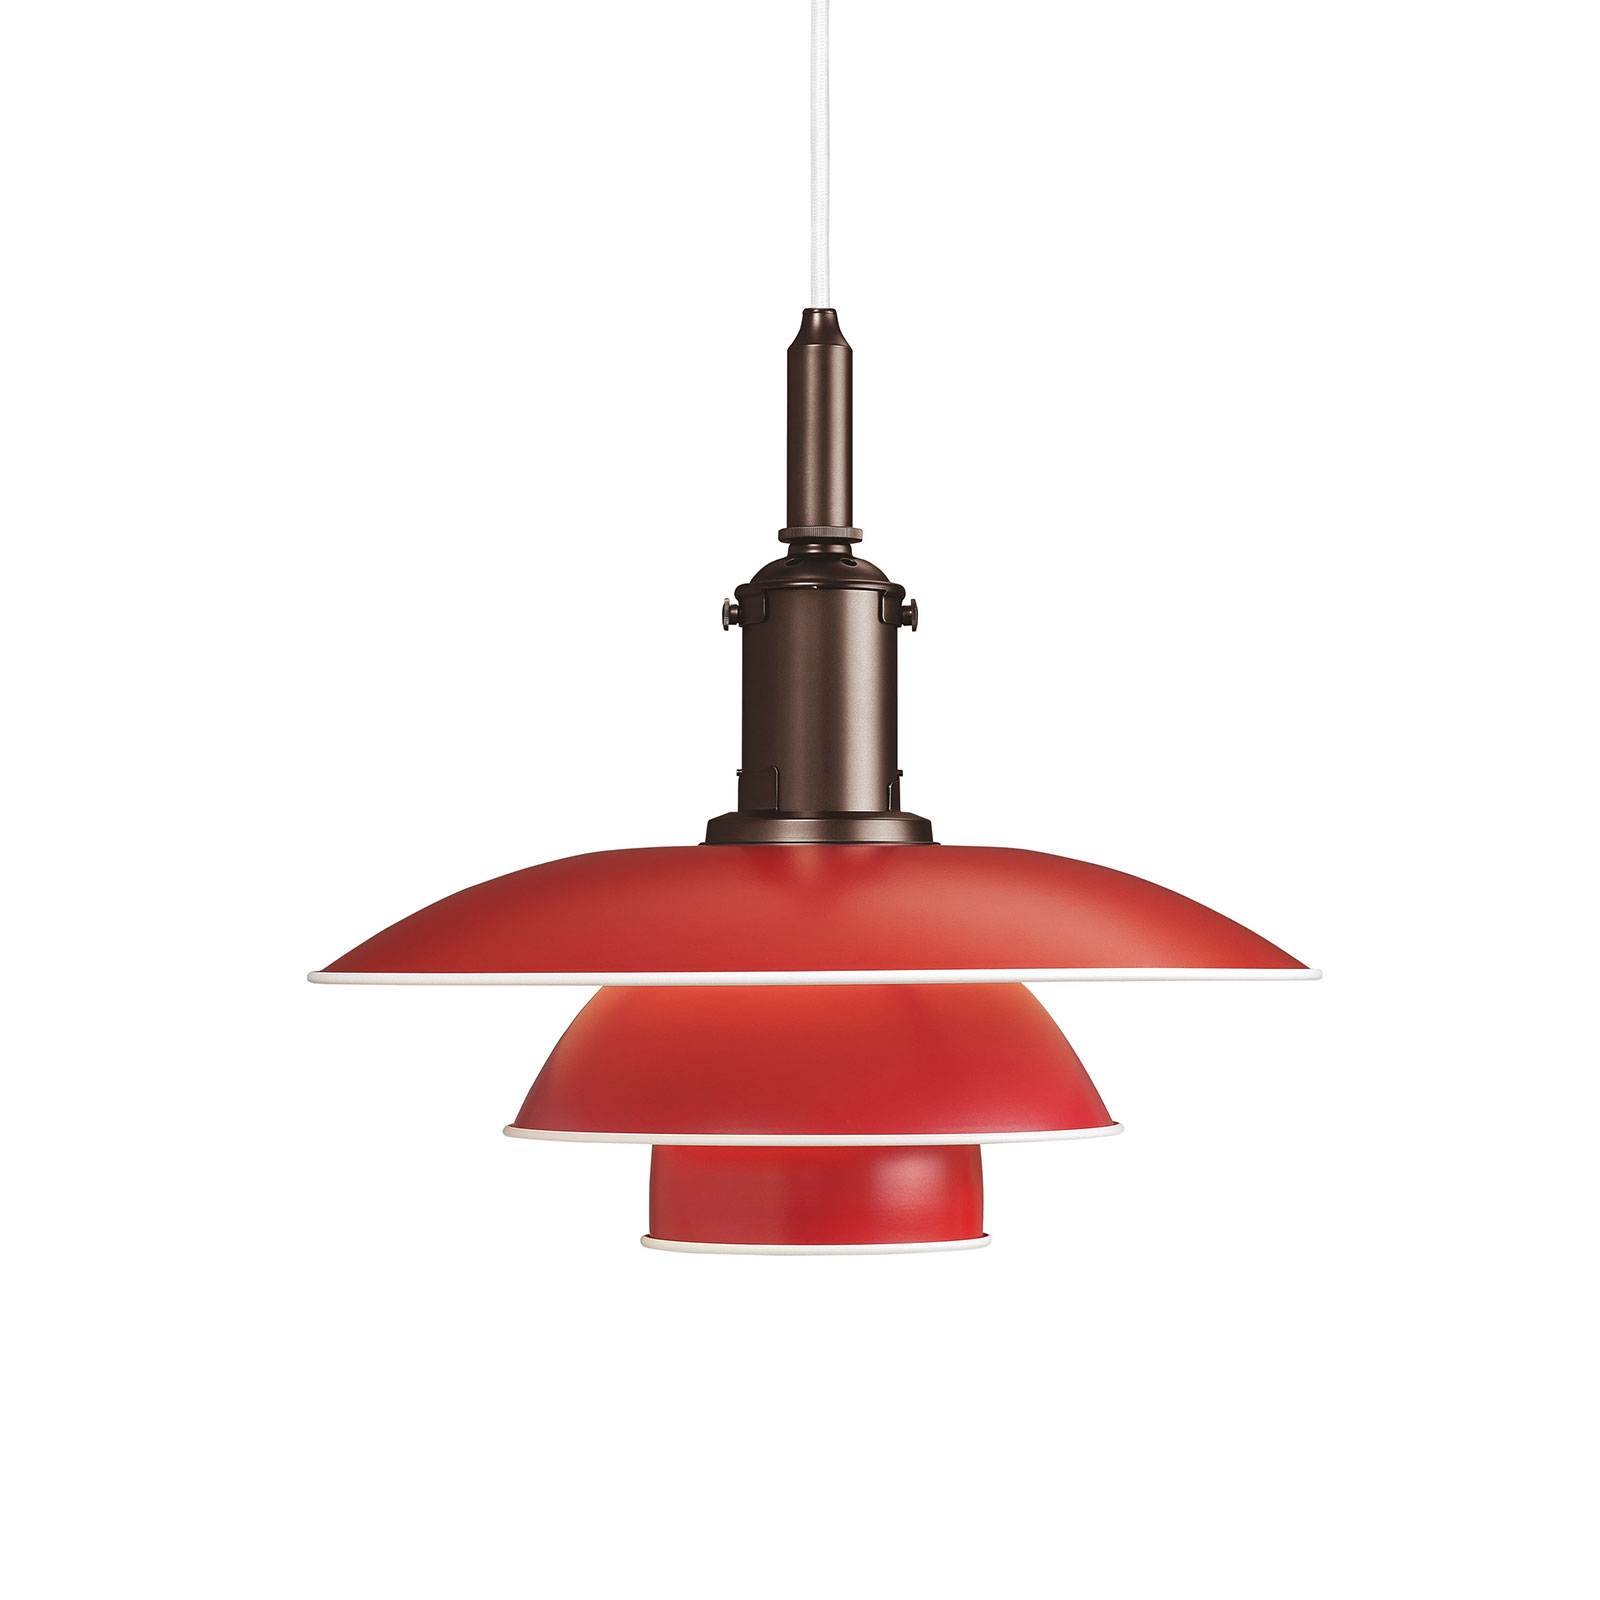 Louis Poulsen PH 3 1/2-3 lampa wisząca czerwona